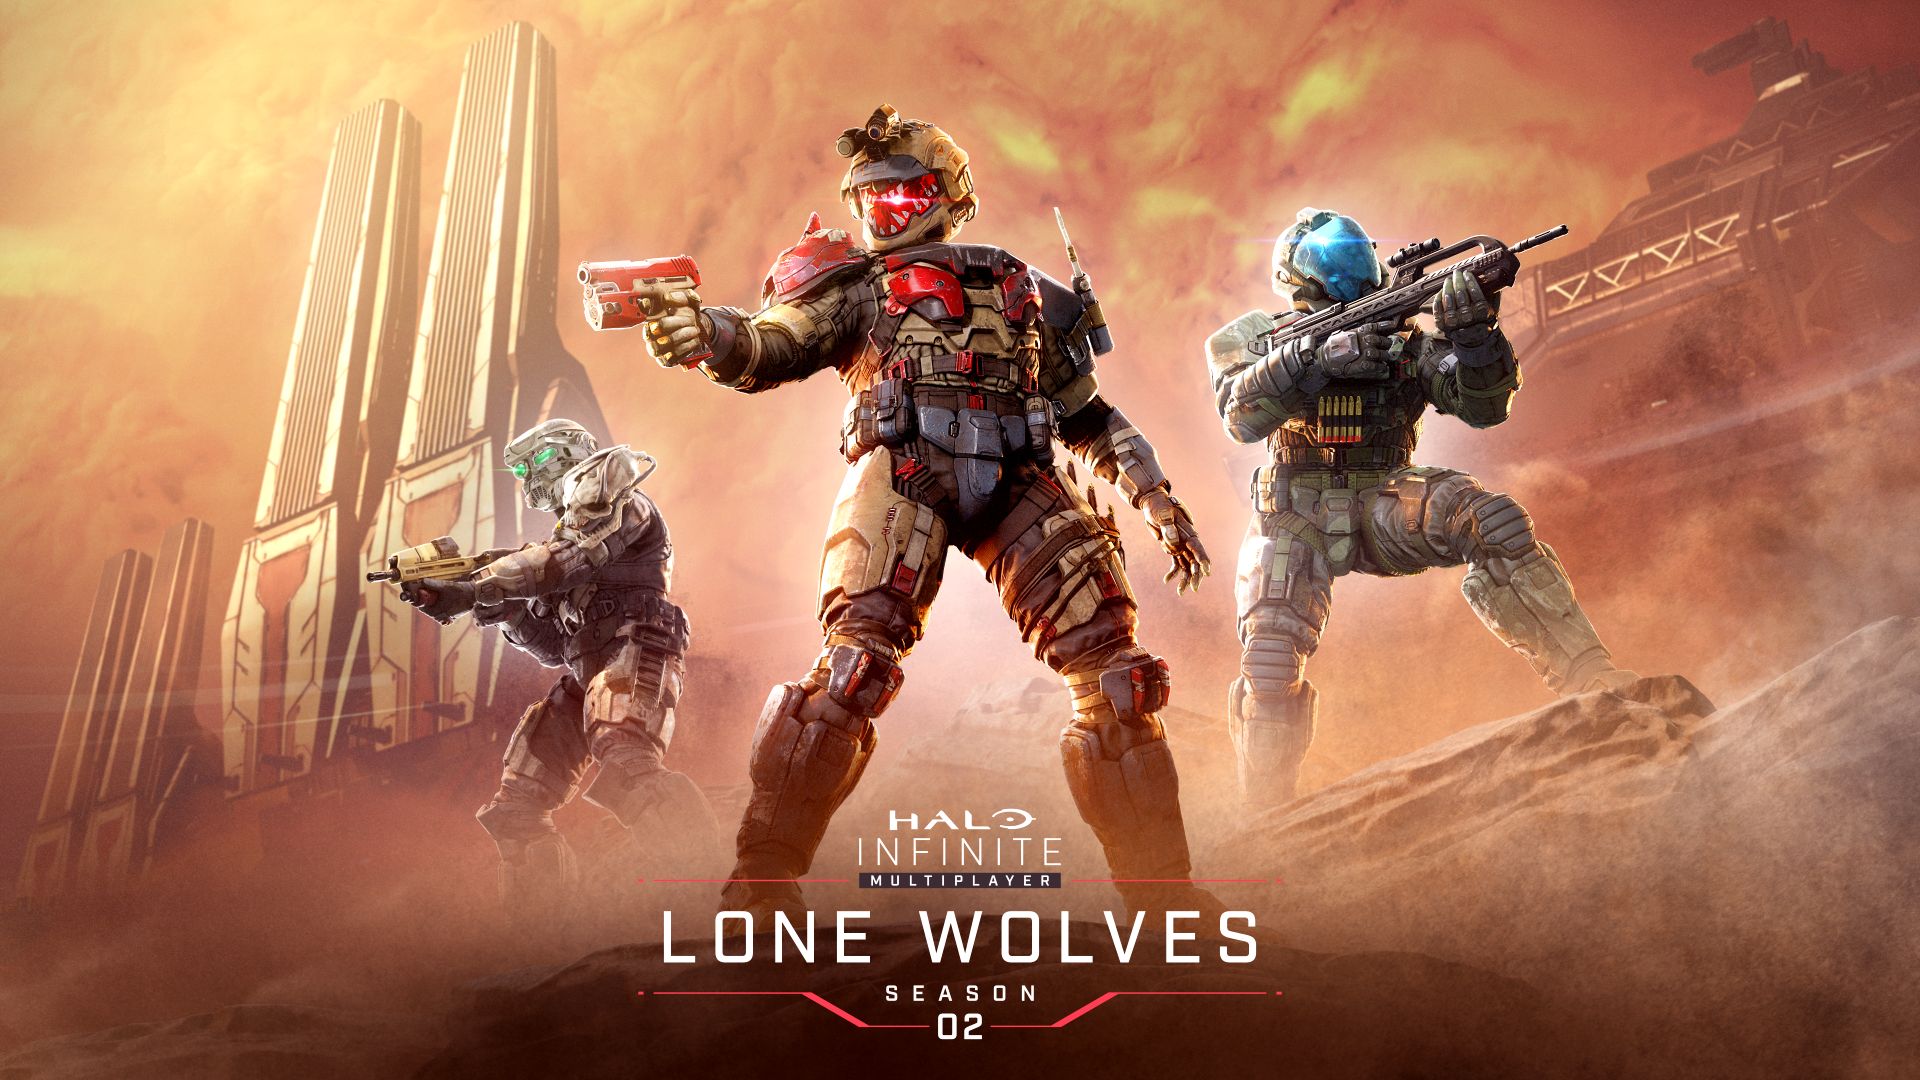 Halo Infinite Lone Wolves: Season 2 startet – Erfahre hier alles, was Du wissen musst: HERO